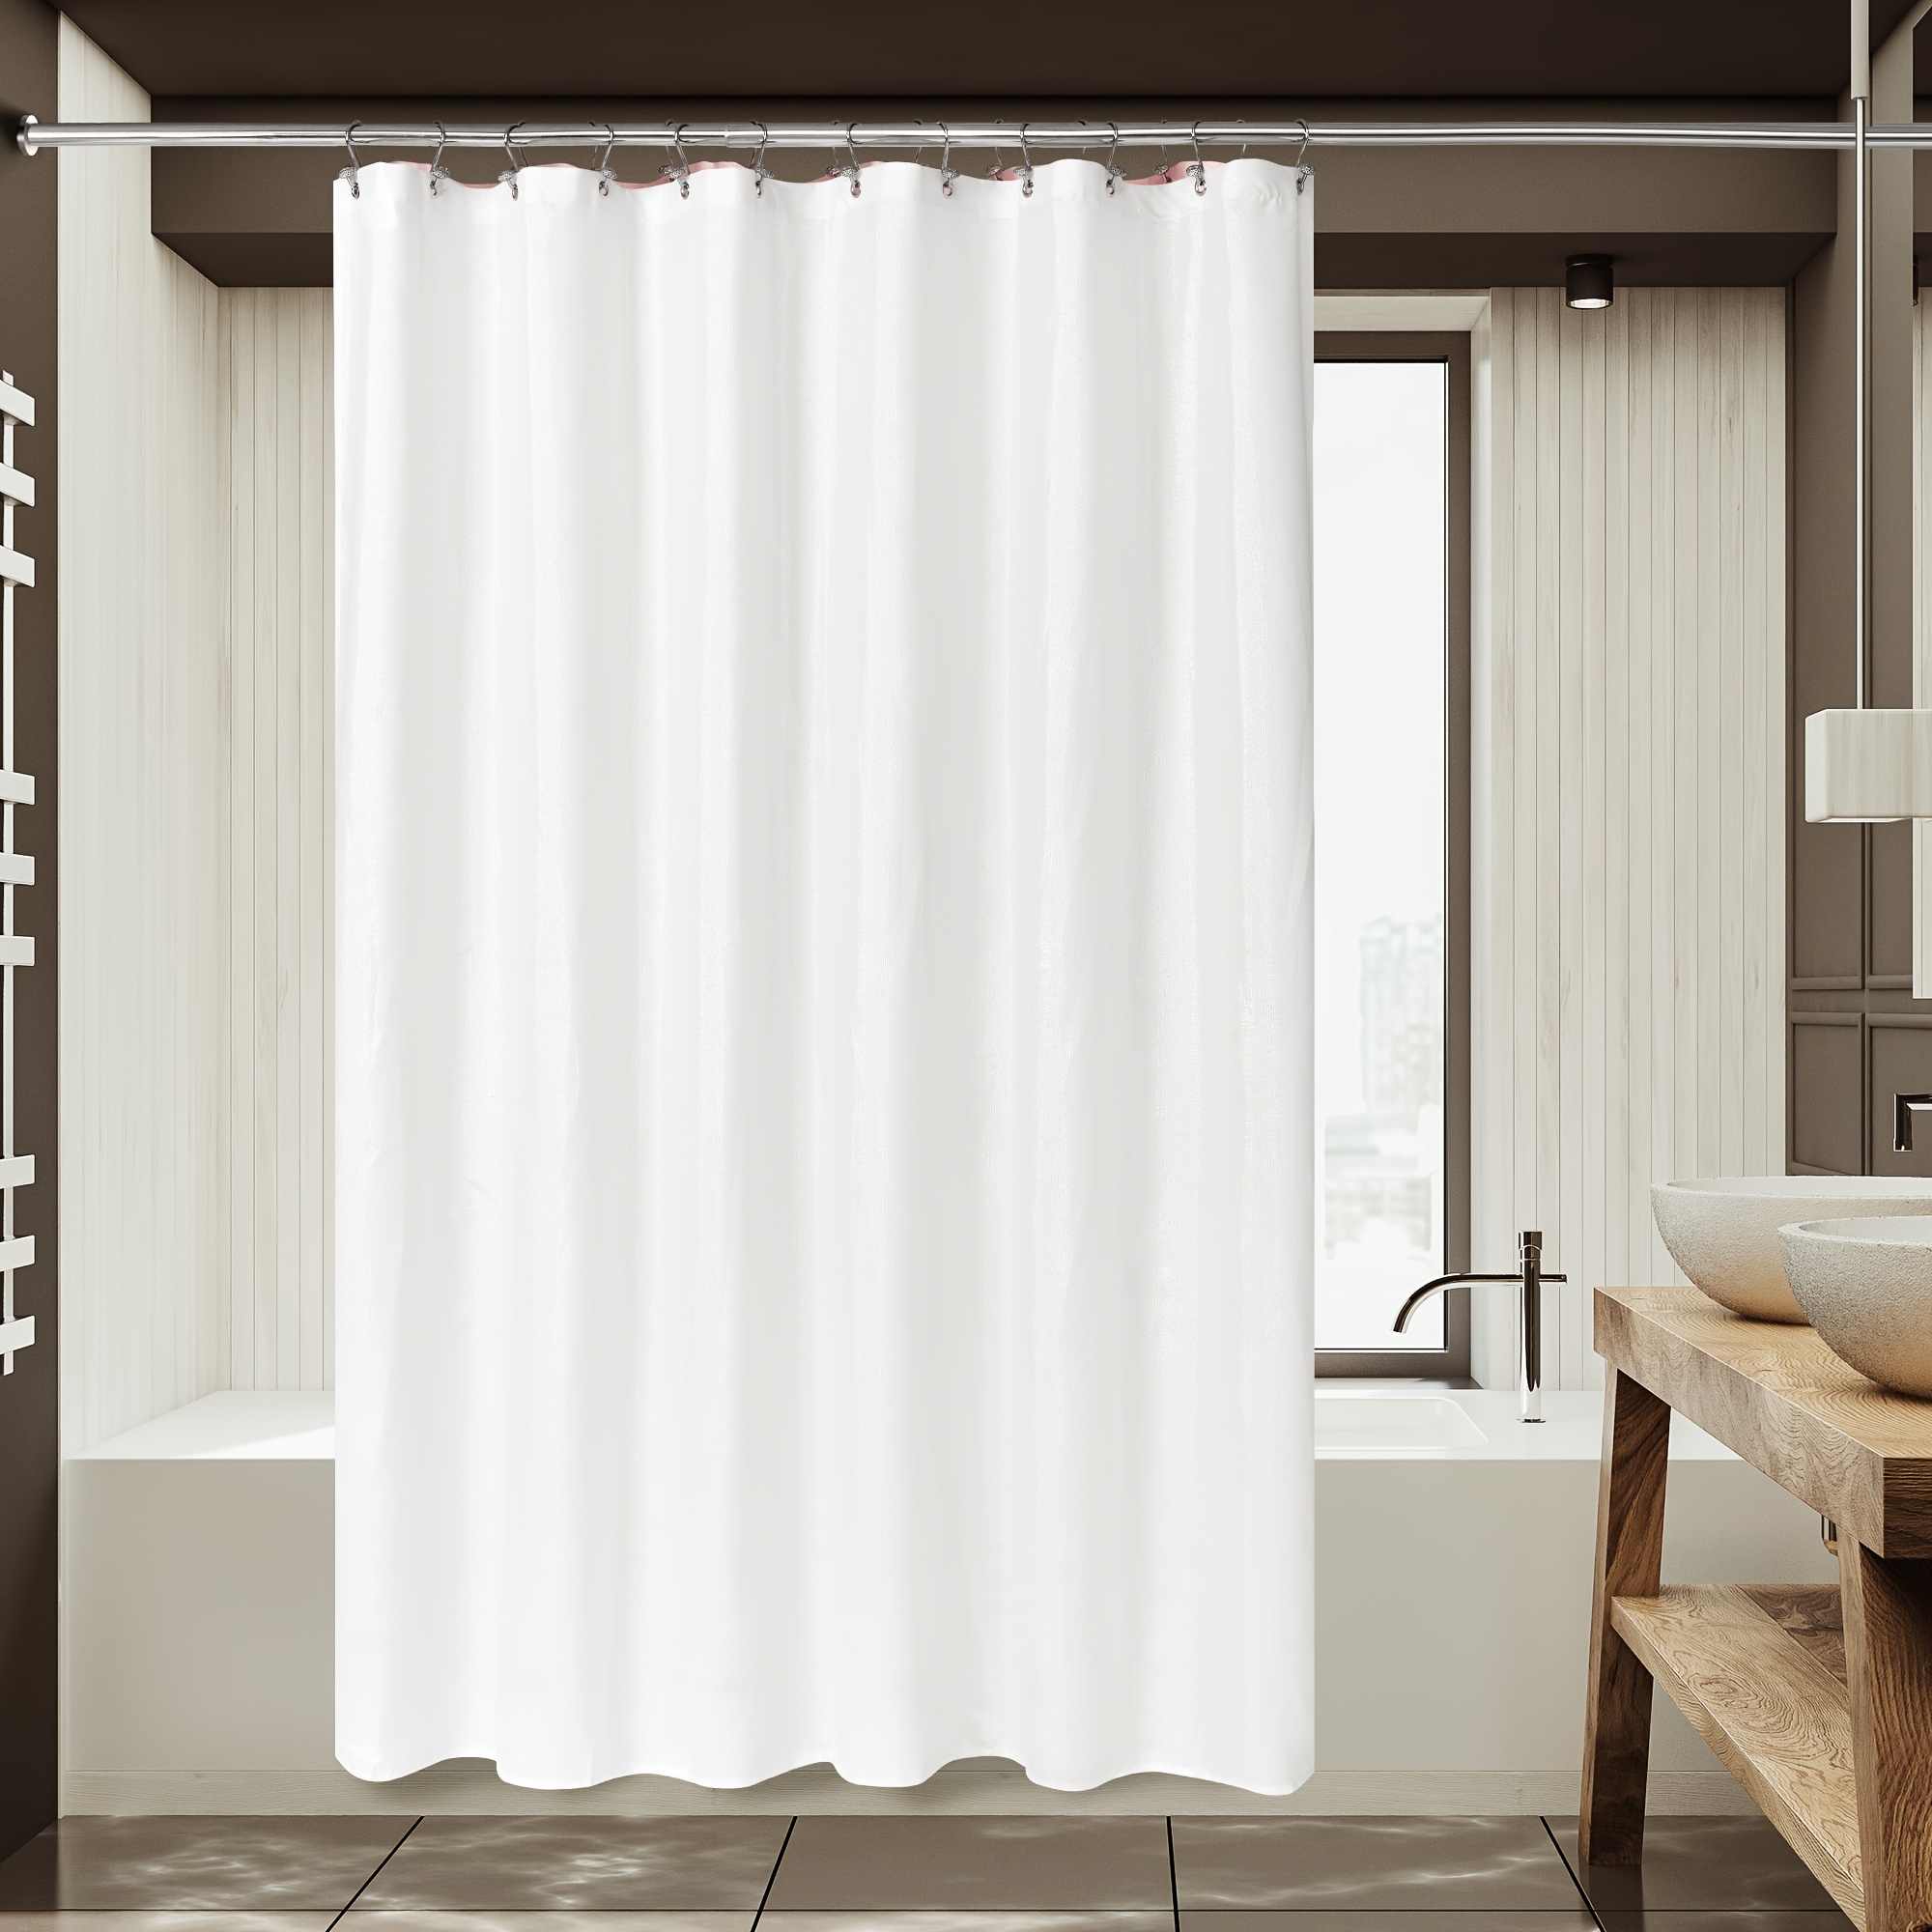 Cortina de ducha a rayas blancas, modernas cortinas de ducha de tela  impermeable para baño, cortinas de ducha en blanco y negro para bañeras, 72